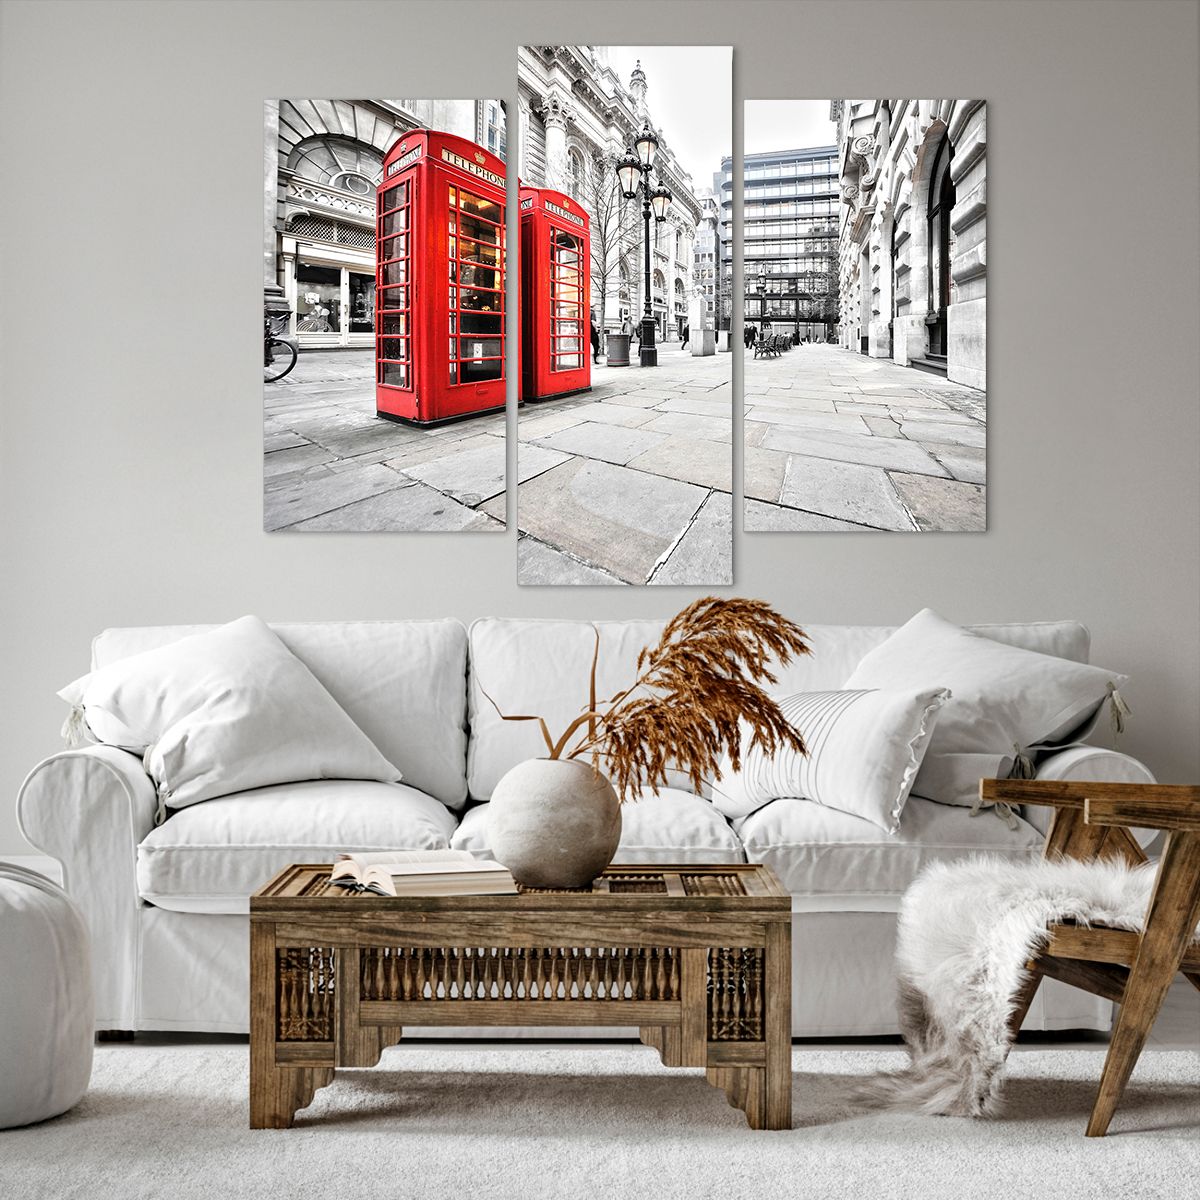 Bild auf Leinwand Städte, Bild auf Leinwand London, Bild auf Leinwand Die Architektur, Bild auf Leinwand Telefonzelle, Bild auf Leinwand England